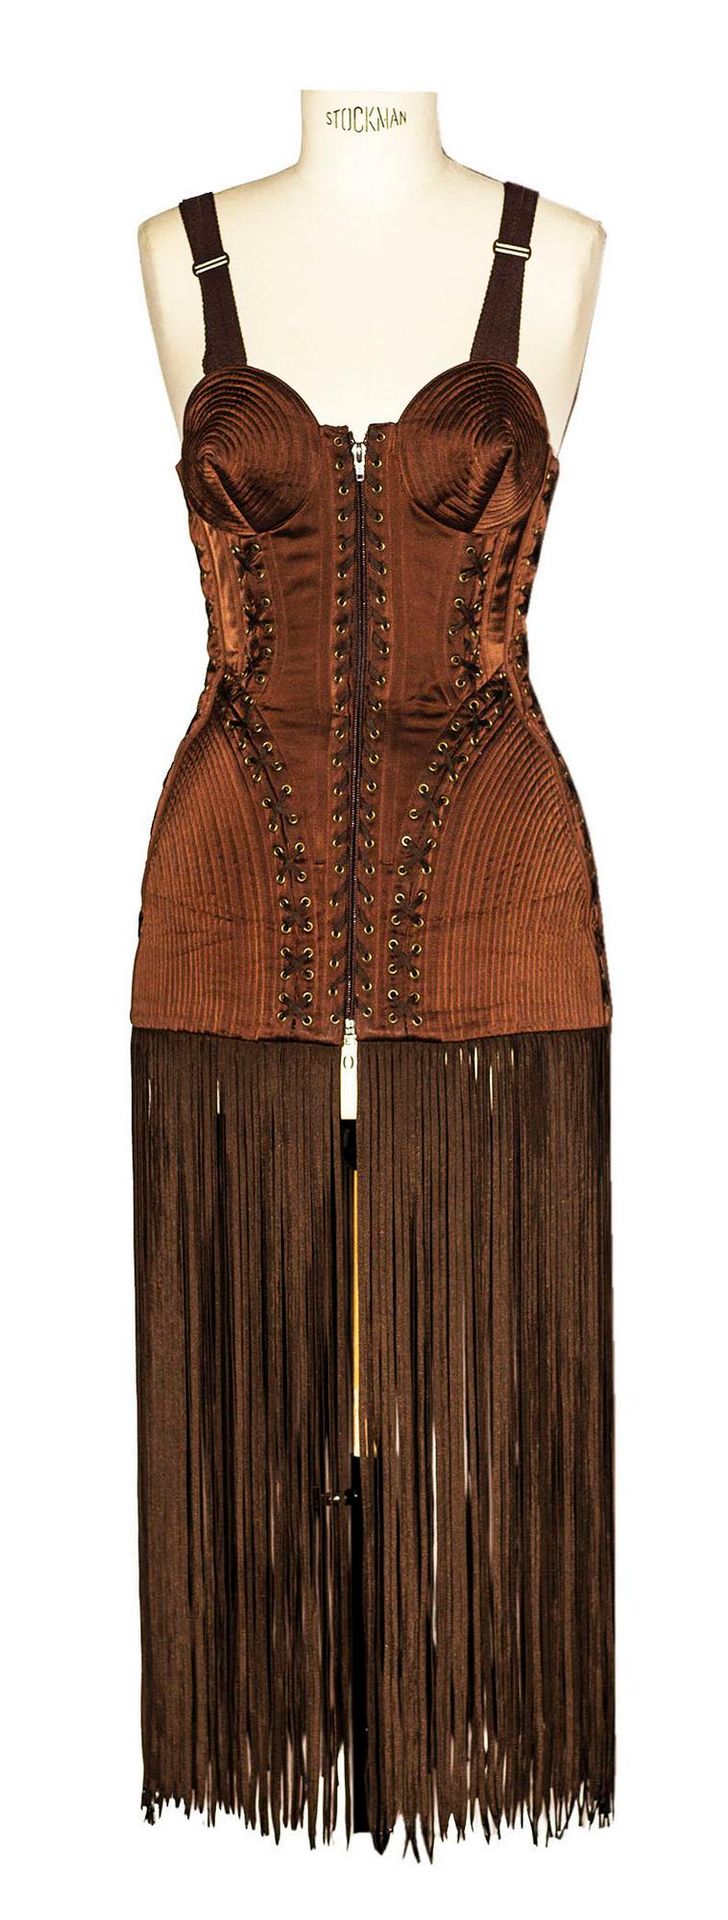 Null Jean Paul Gaultier

CORSETTO CON LACCI



Descrizione:

Esemplare di corset&hellip;